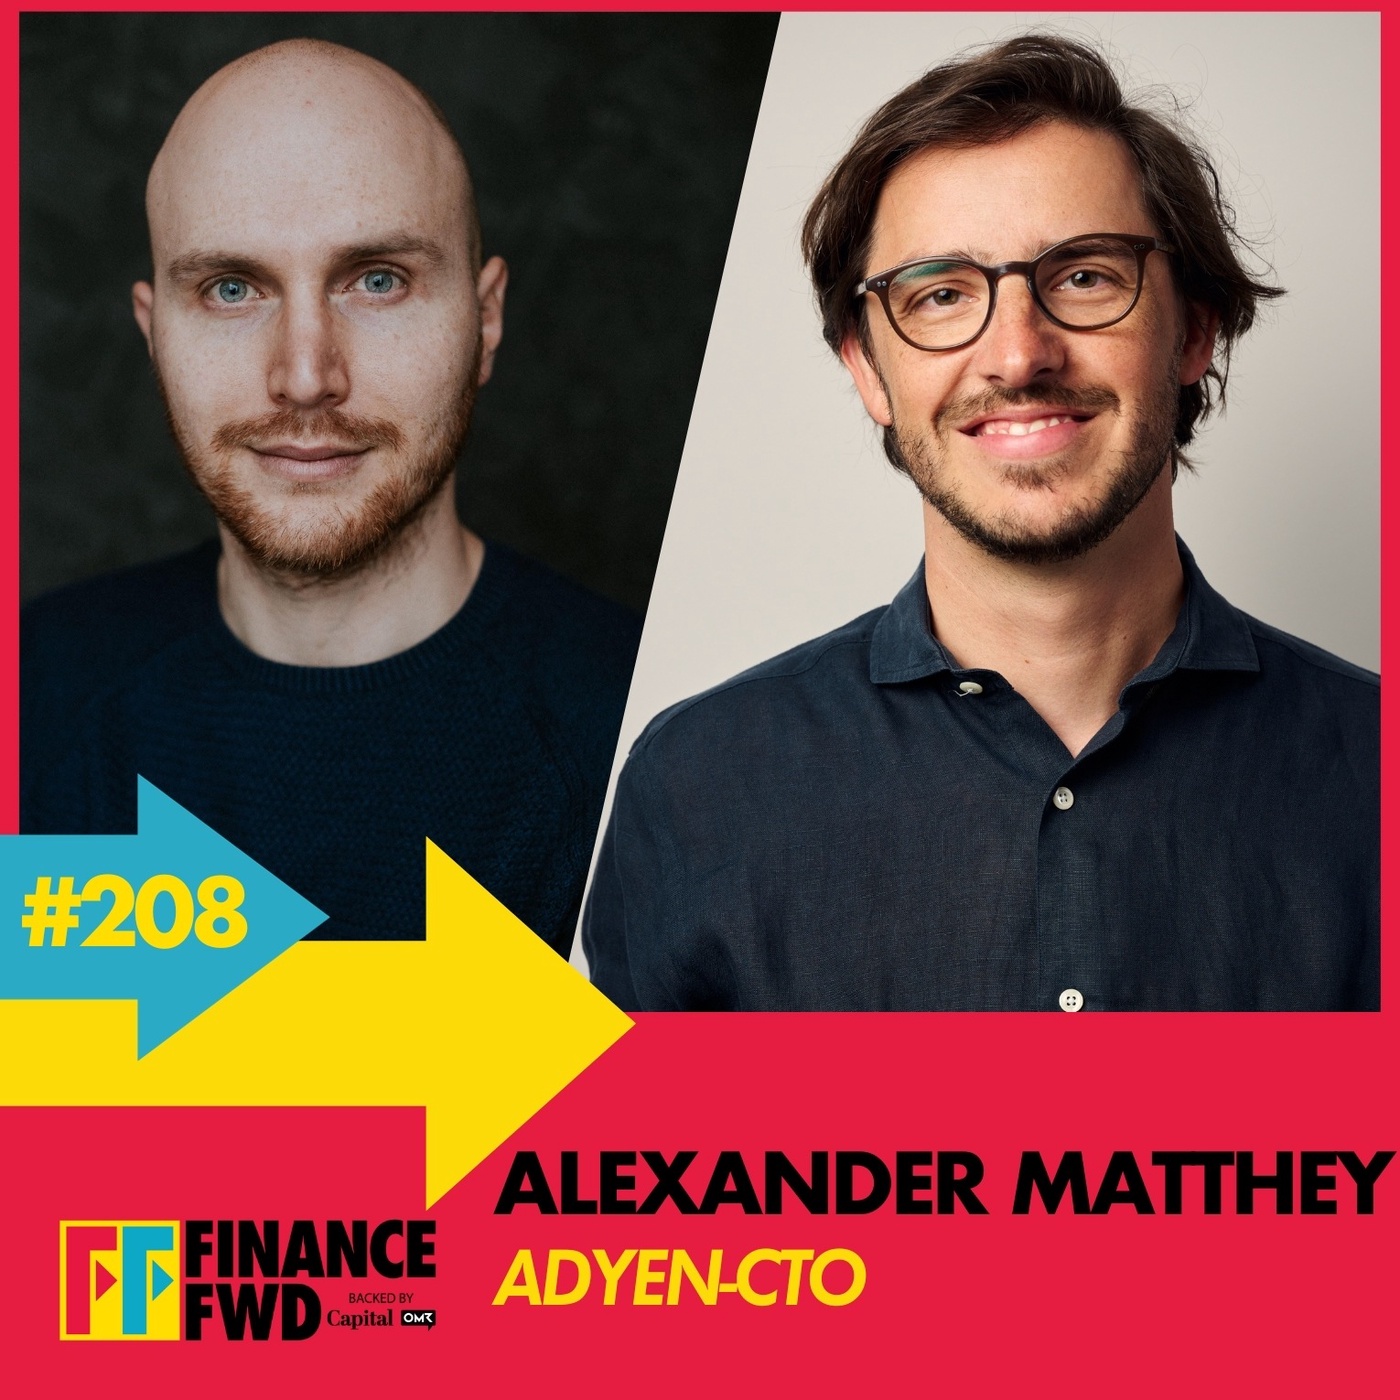 FinanceFWD #208 mit Adyen-CTO Alexander Matthey